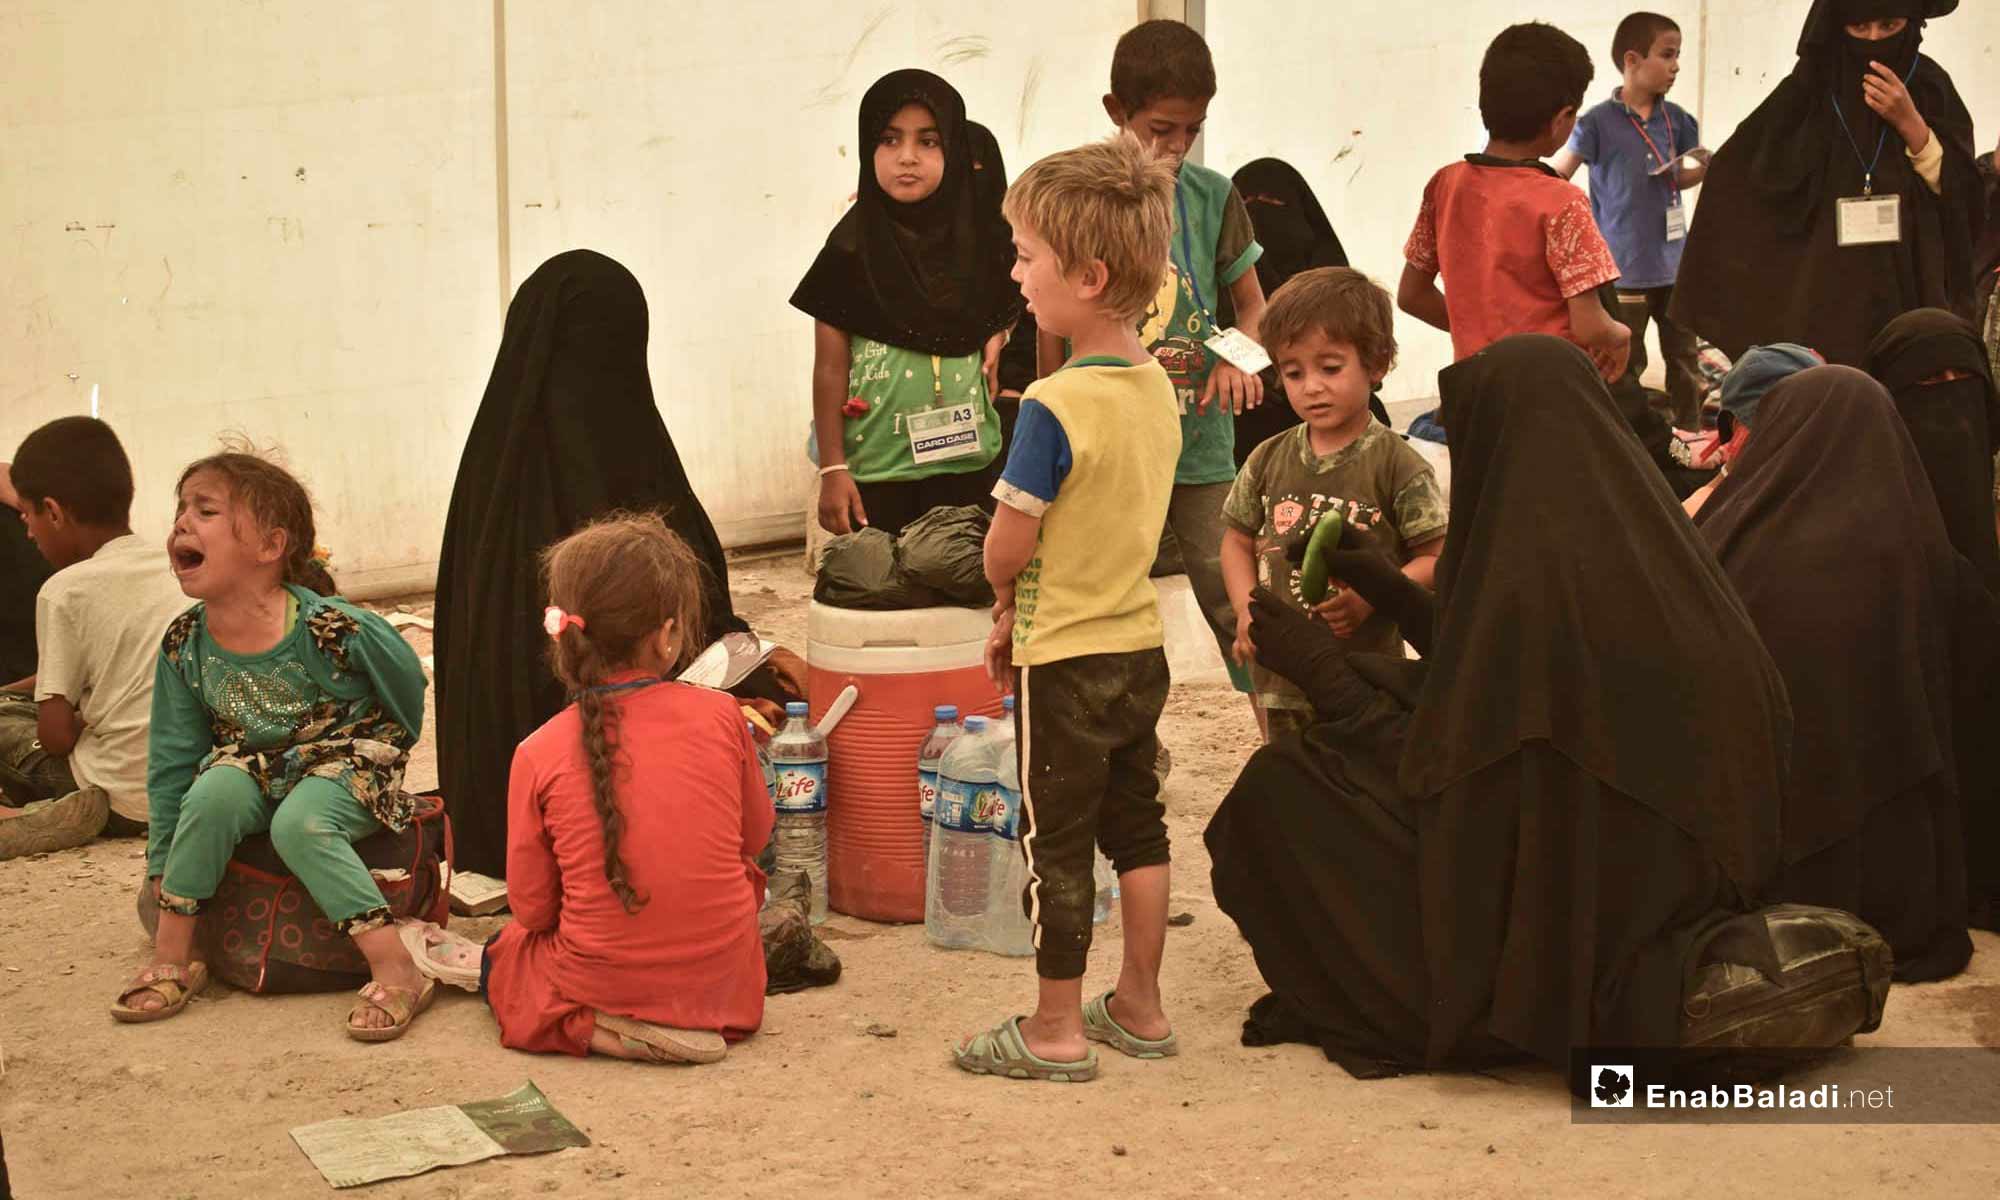 Children in the al-Hawl Camp in rural al-Hasakah, east of the Euphrates – June 25, 2019 (Enab Baladi)